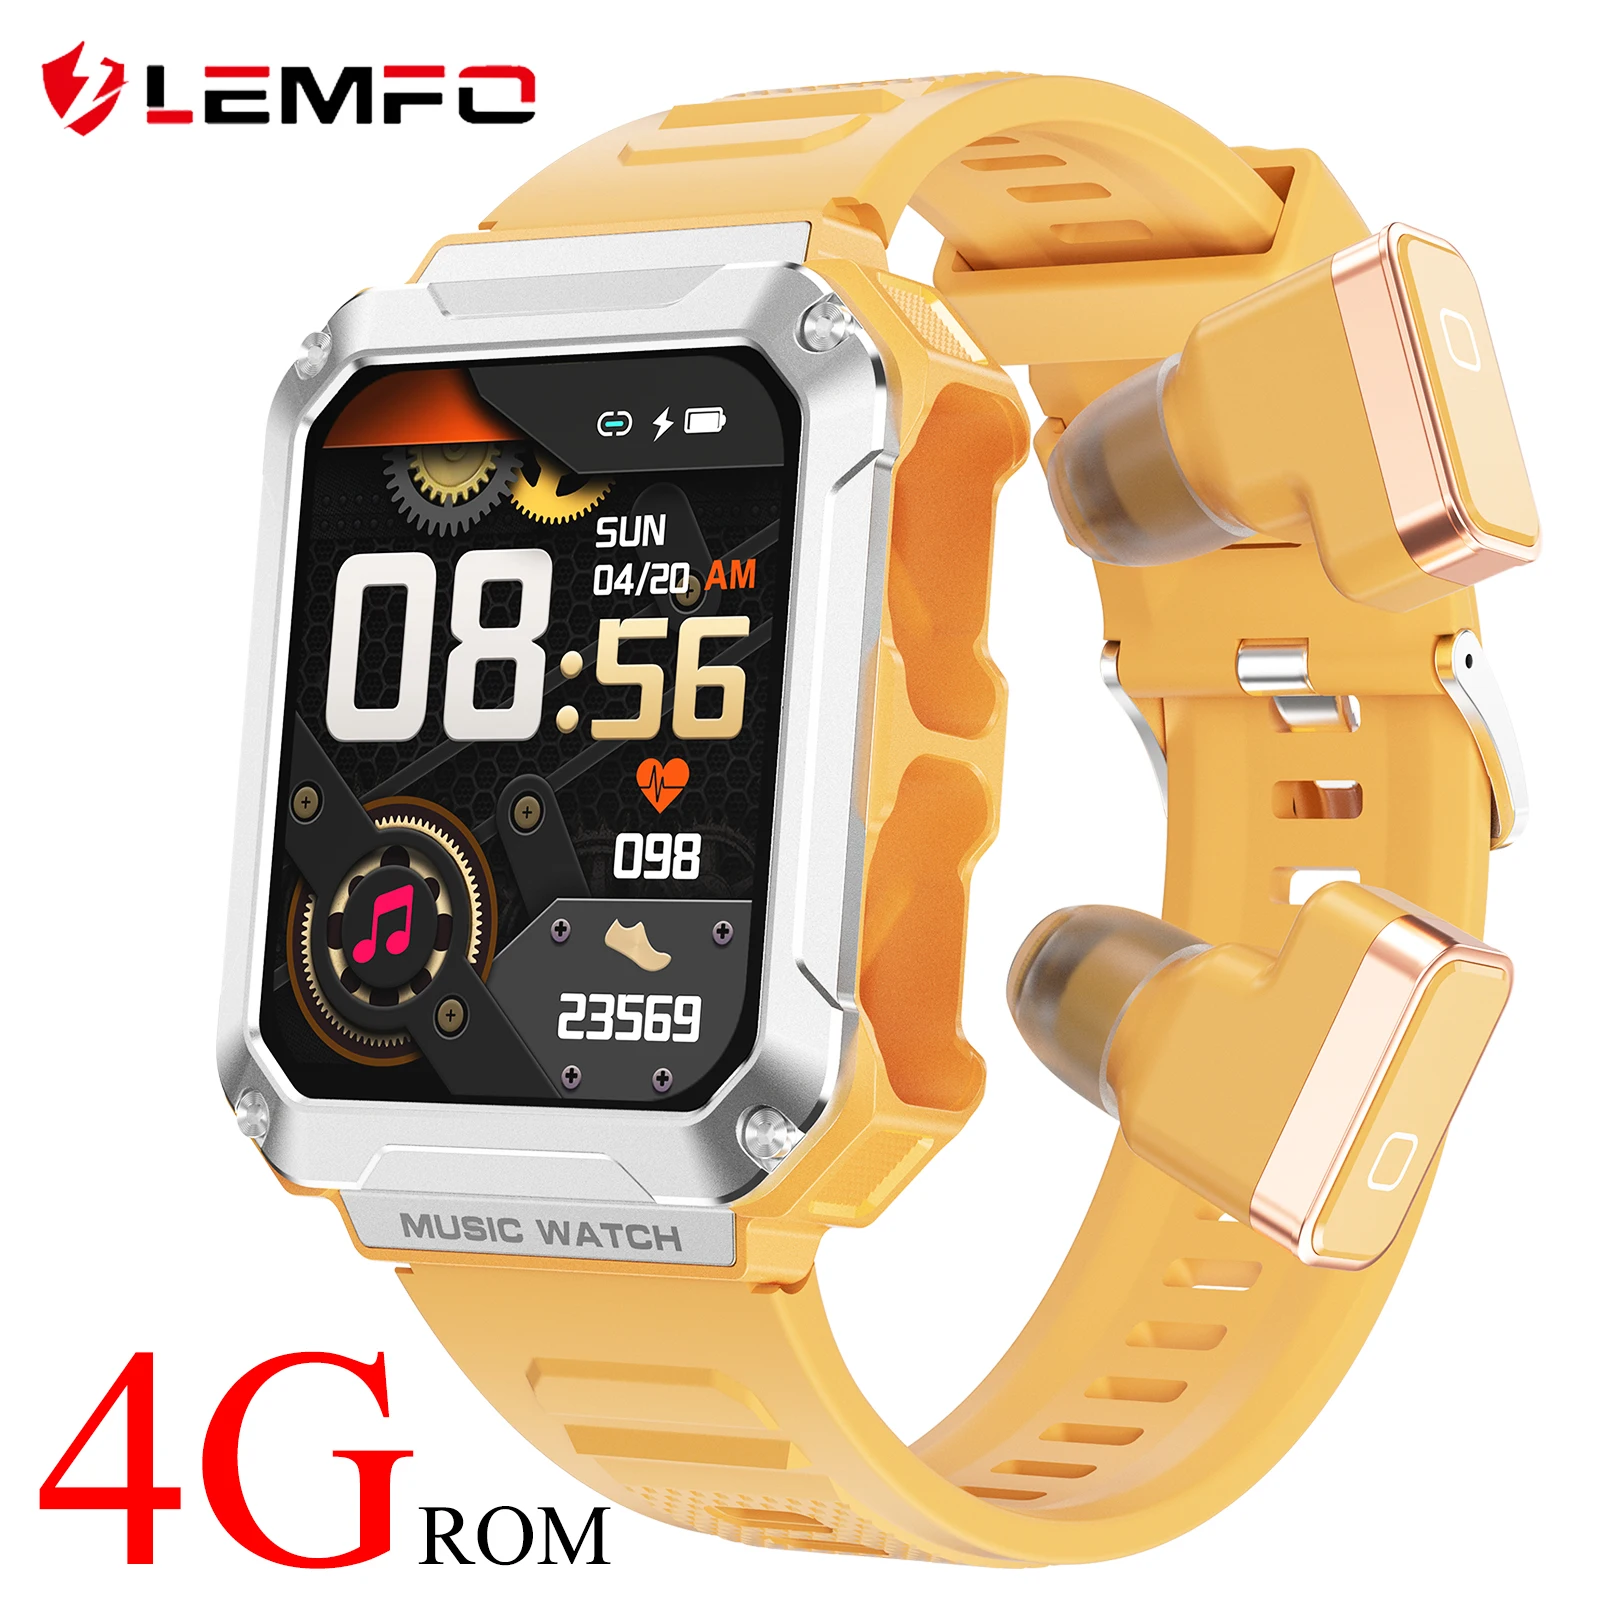 

LEMFO смарт часы 4G ROM Встроенные наушники Bluetooth смарт часы женские мужские Срок службы аккумулятора 5 дней 400 мАч умные часы 100+ Спортивная модель Новый smart watch 1.96" 240*296 HD Мониторинг температуры тела